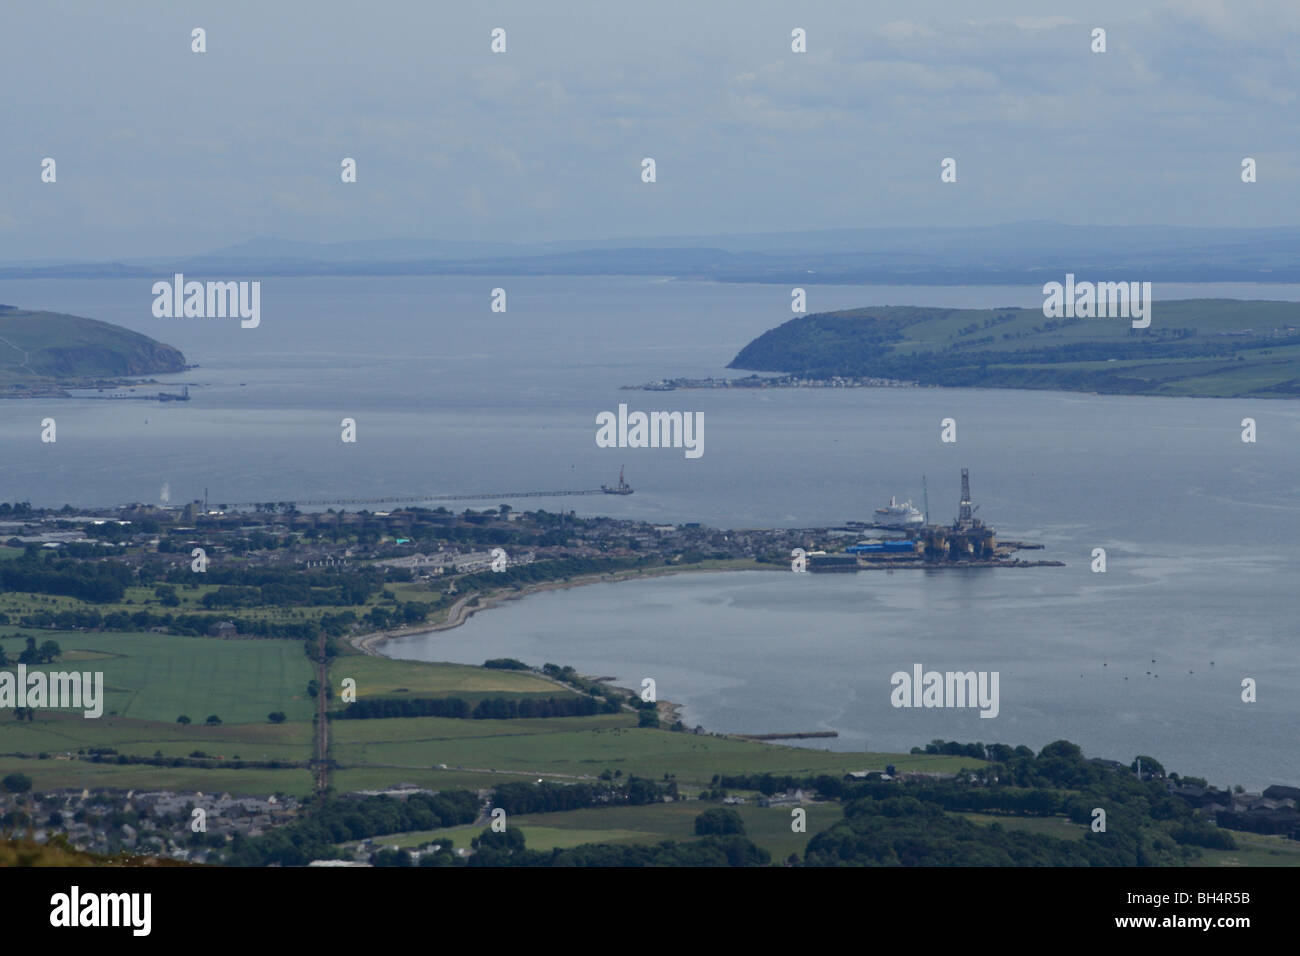 Vista di Cromarty Firth che guarda al Mare del Nord con Alness, Cromarty, una nave da crociera e oil rig di lavori di costruzione. Foto Stock